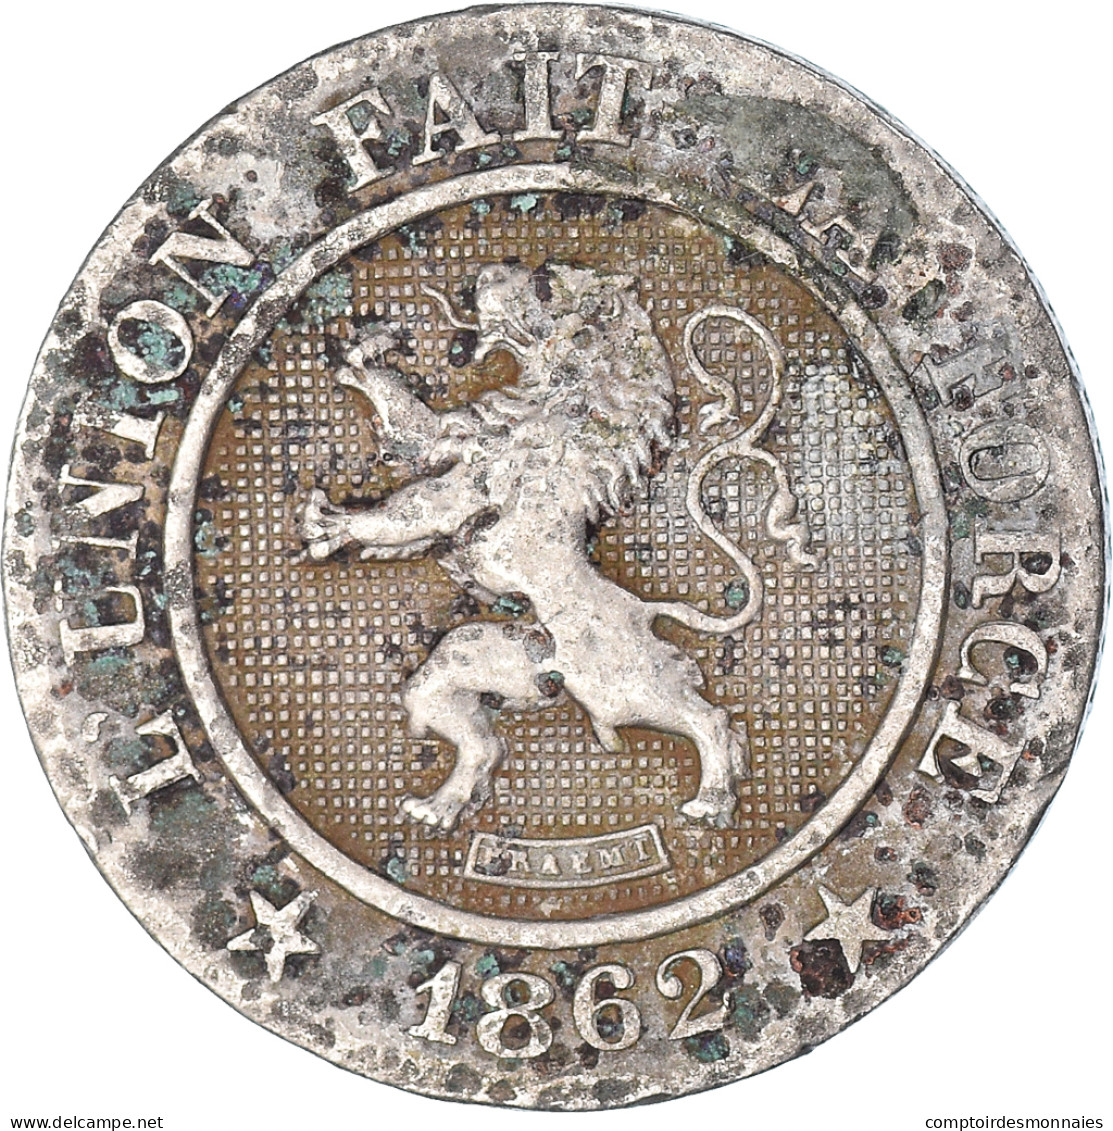 Monnaie, Belgique, 10 Centimes, 1862 - 10 Centimes